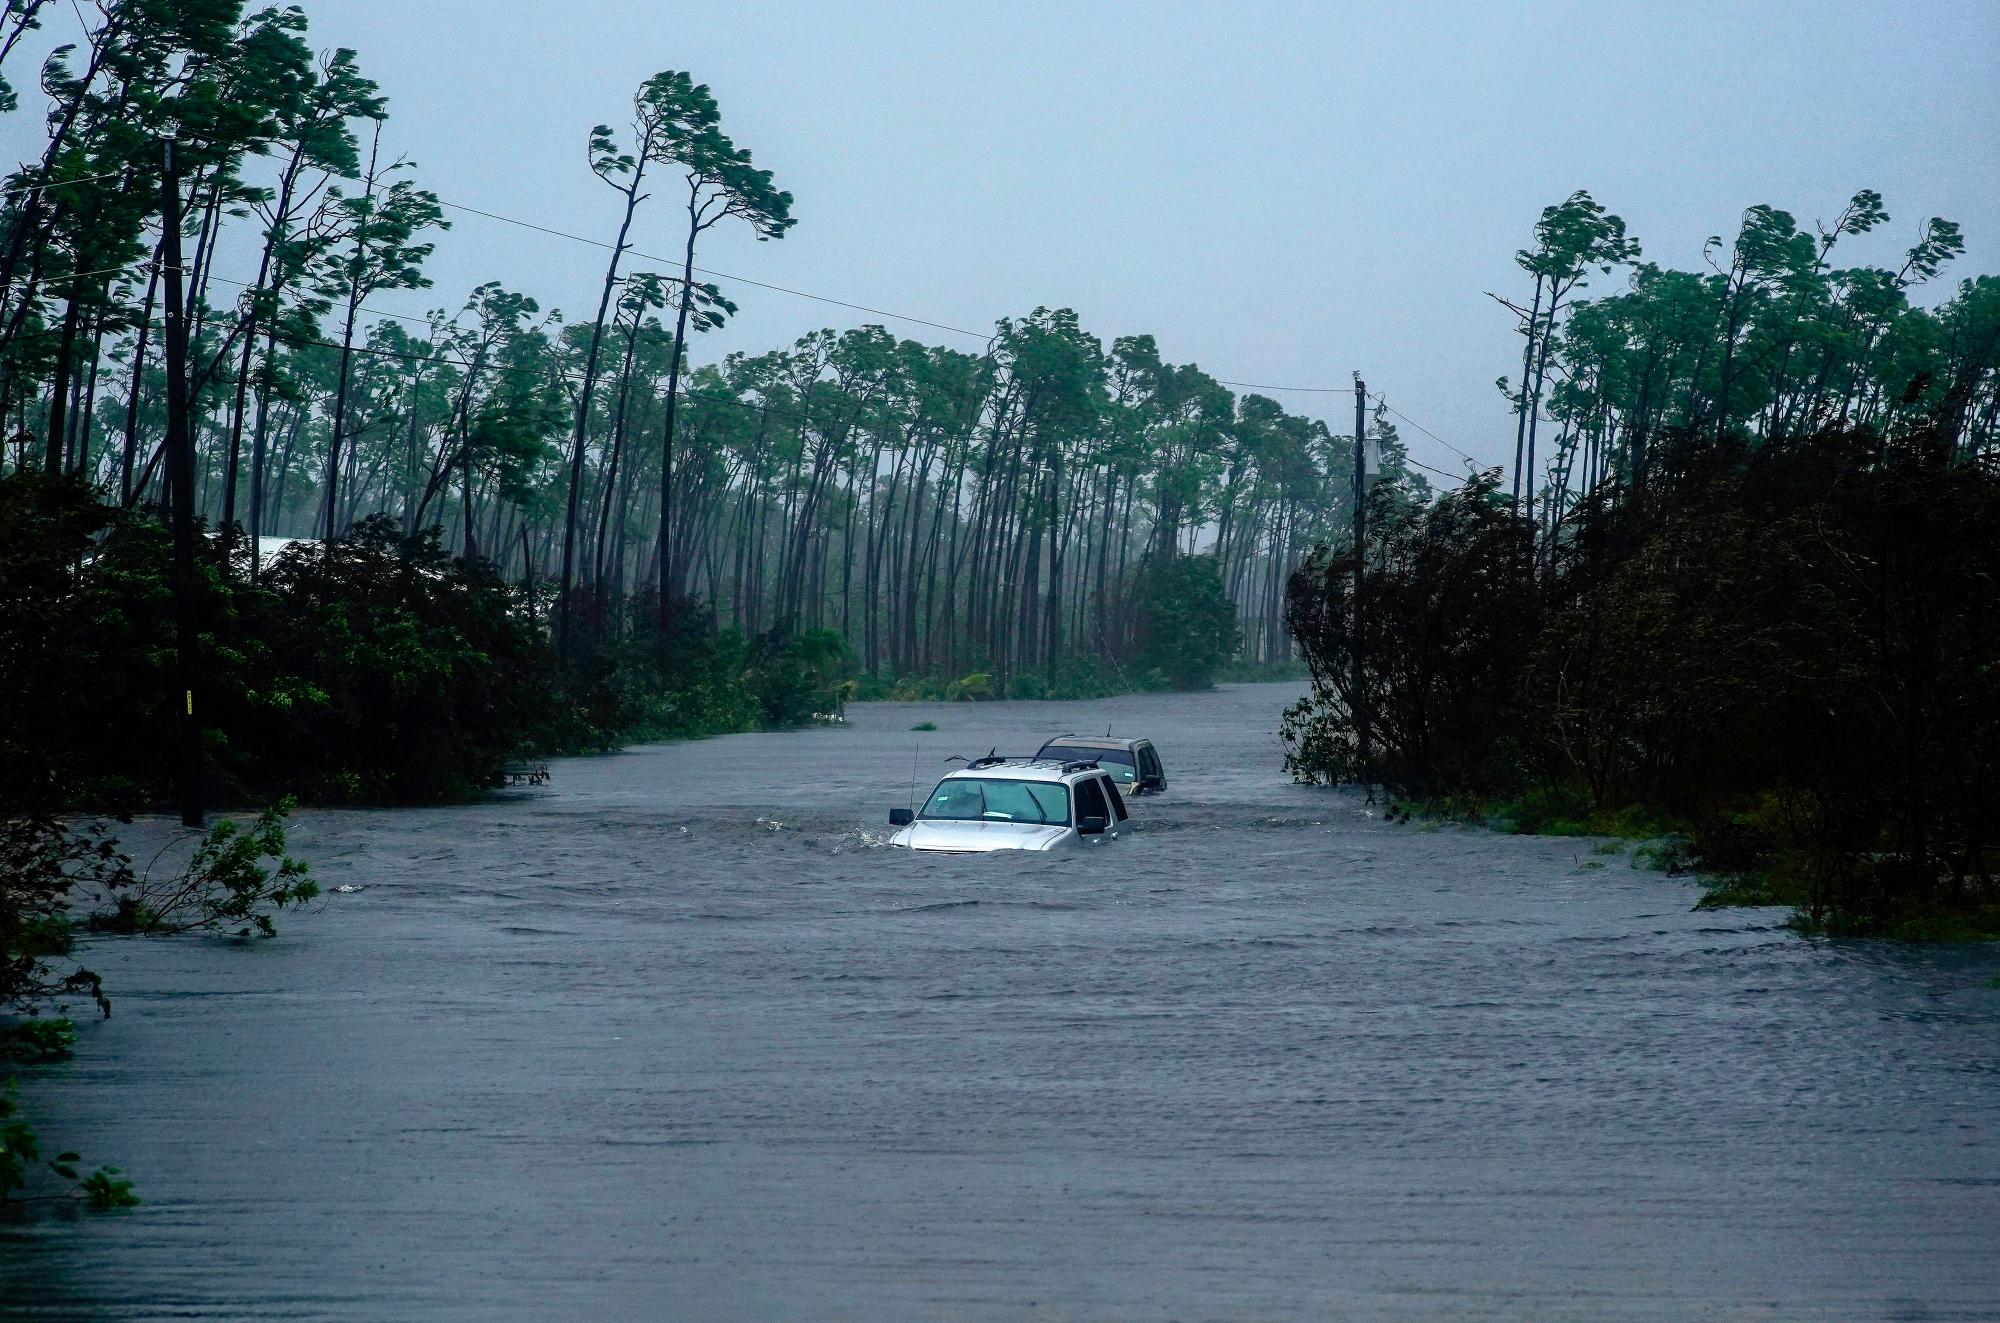 Los automóviles se encuentran sumergidos en el agua del huracán Dorian en Freeport, Bahamas, el martes 3 de septiembre de 2019. Dorian comienza a avanzar lentamente hacia el noroeste después de estar parado sobre las Bahamas, donde sus vientos implacables han causado daños catastróficos e inundaciones. 